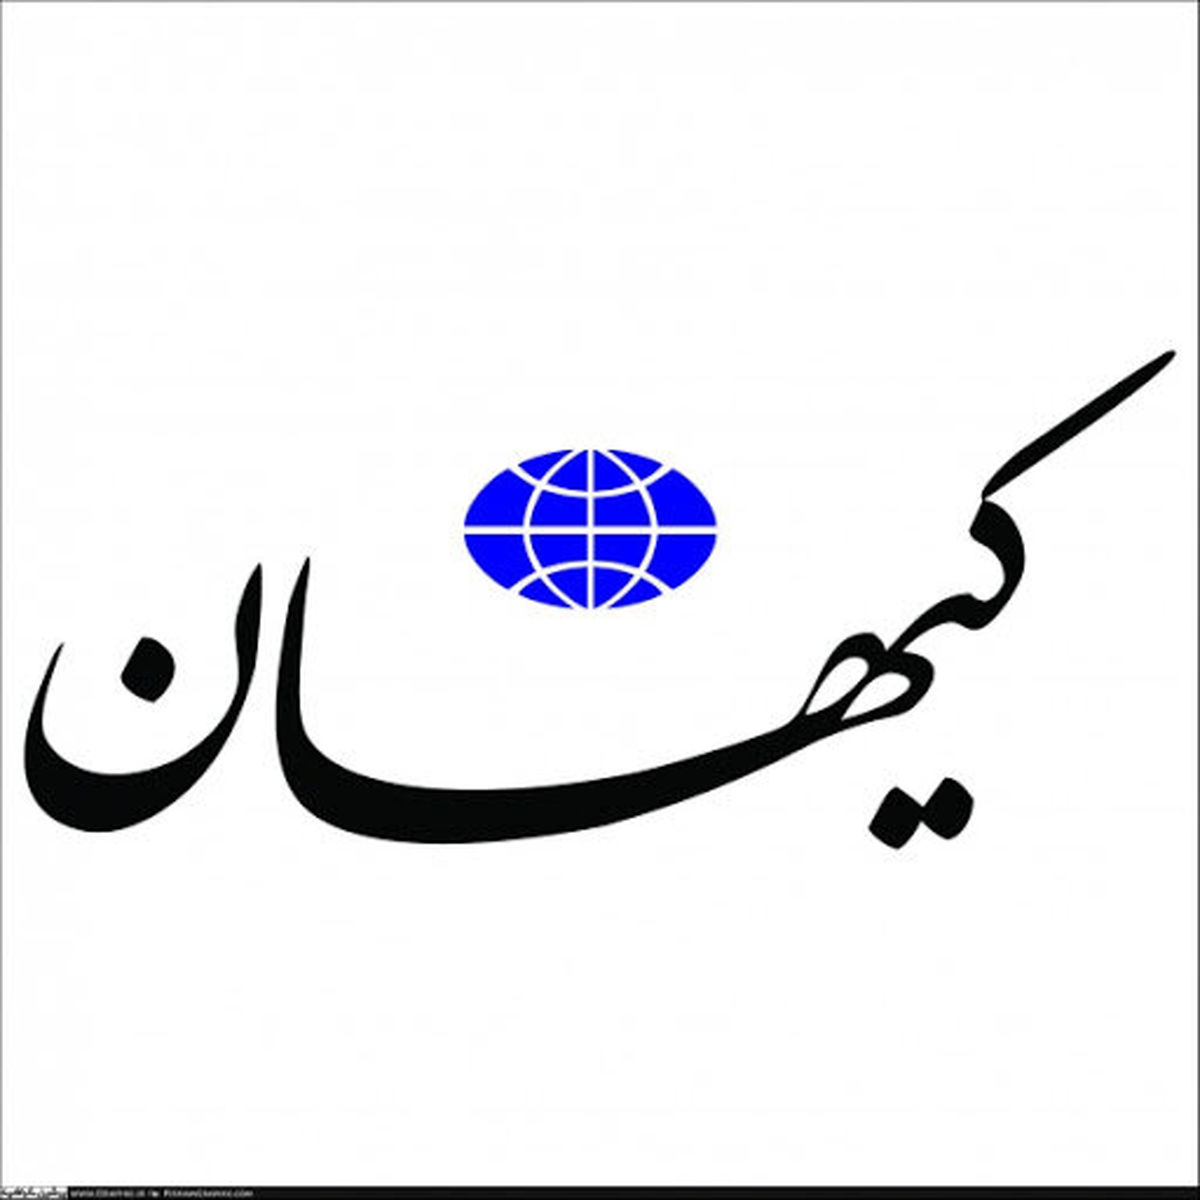 کیهان: تئاتر یعنی مردم فریبی با سوءاستفاده از سلبریتی‌ها، ترویج بدحجابی، کلمات و اشارات غیراخلاقی، توهین به ارزشها